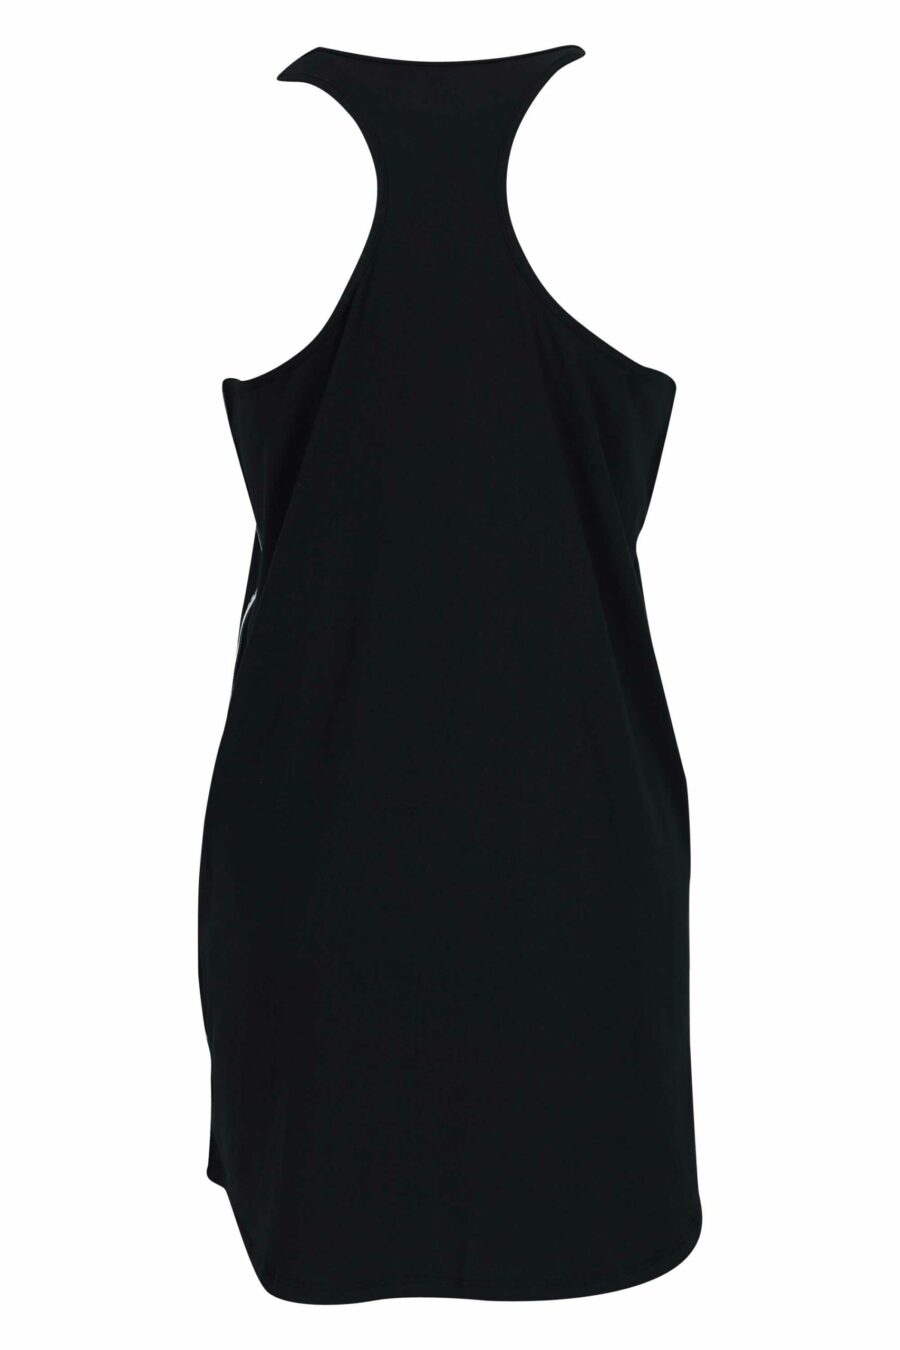 Black dress with monochrome mini-logo - 667113721200 1 scaled